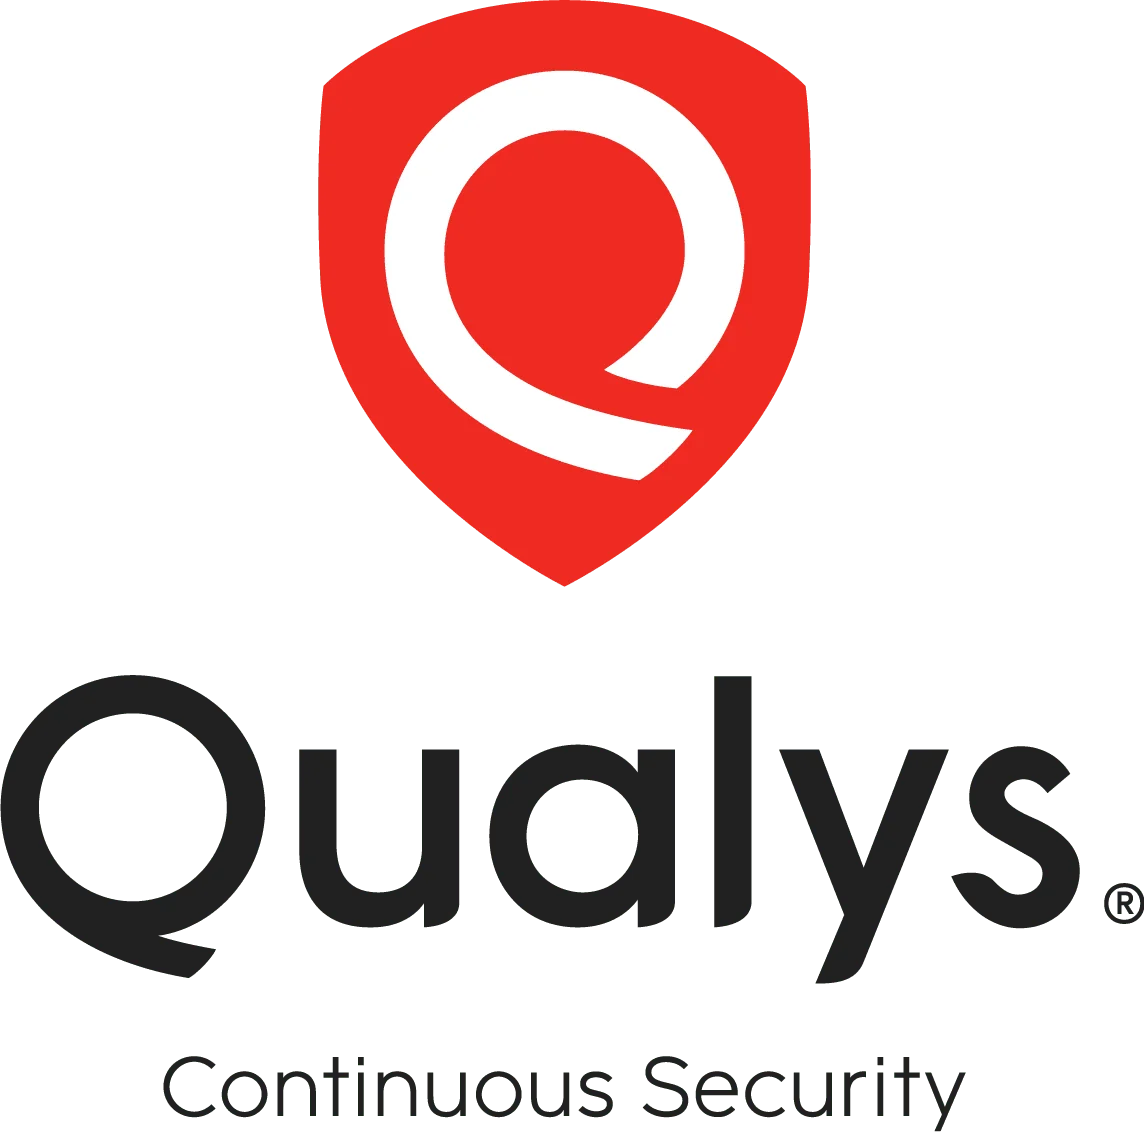 Qualys security